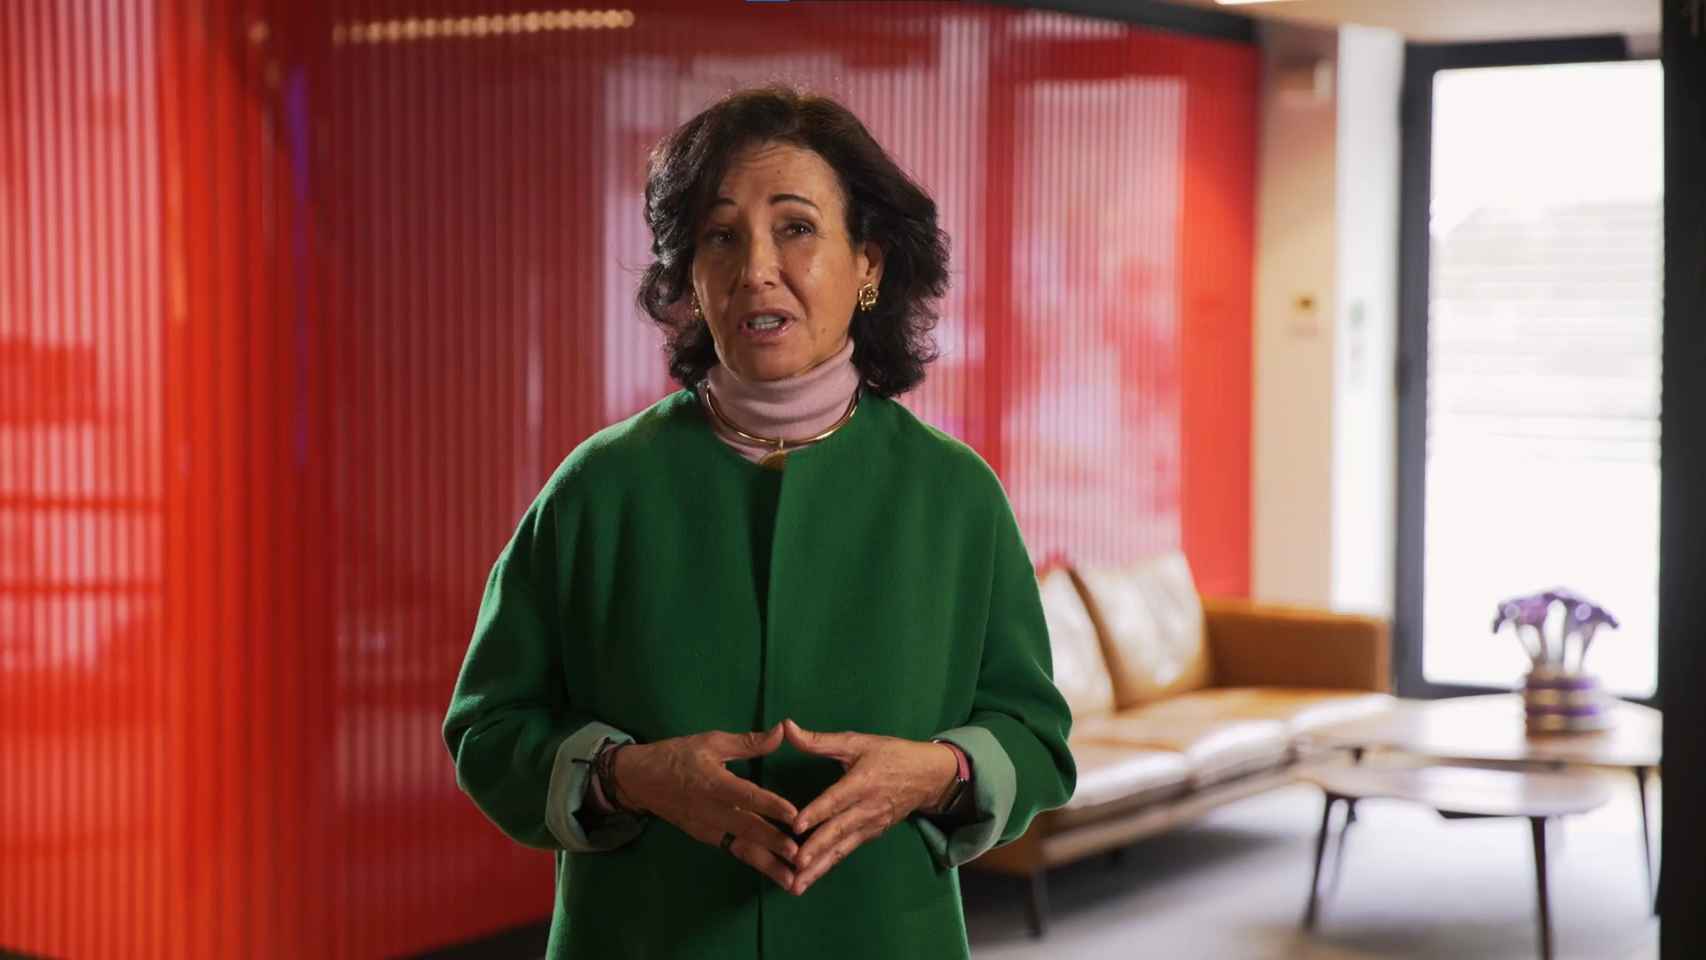 Ana Patricia Botín, presidenta ejecutiva de Santander, durante su intervención 'online' en la quinta jornada del 'Wake Up, Spain!'.